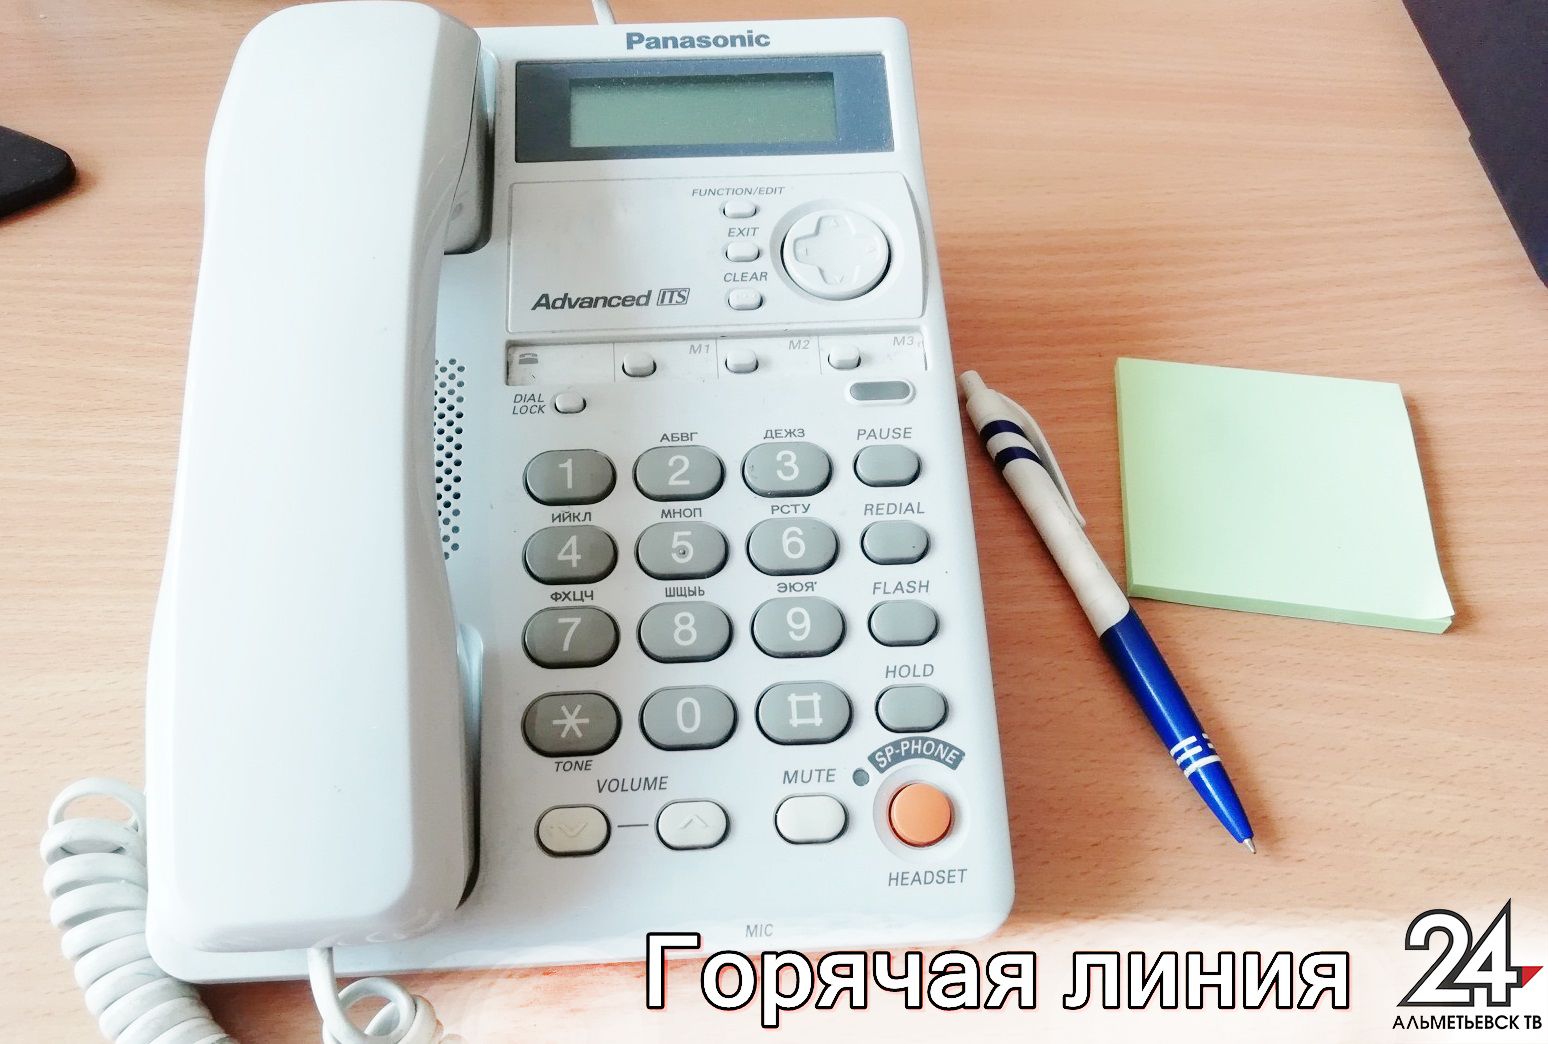 Предприниматели могут позвонить на горячие линии министерств и ведомств Татарстана